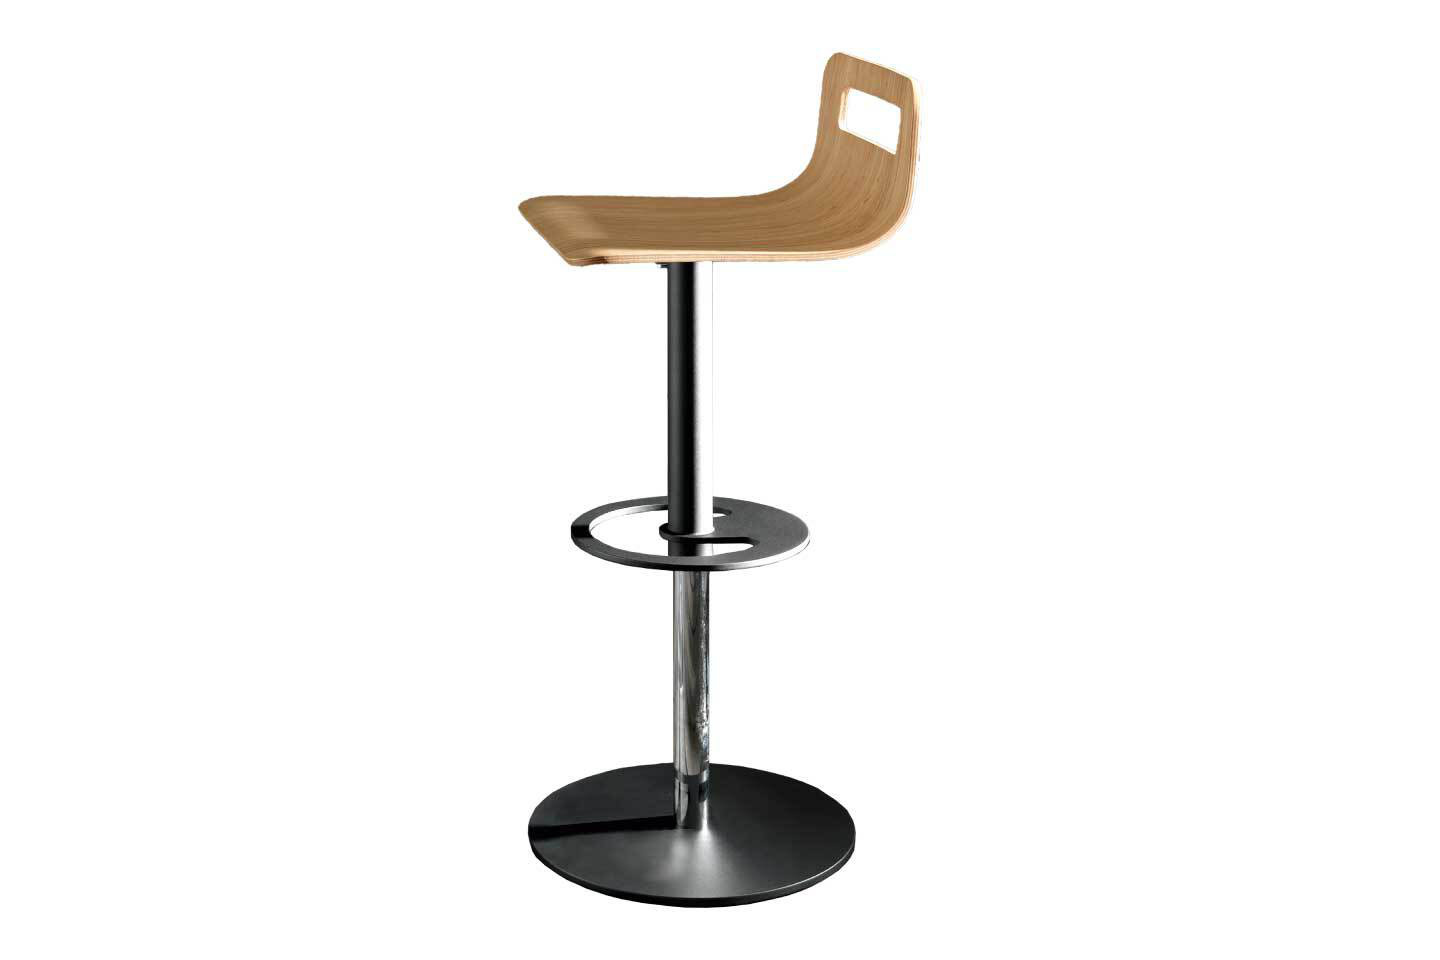 Mobili Italia_Altacom DROP counter stool